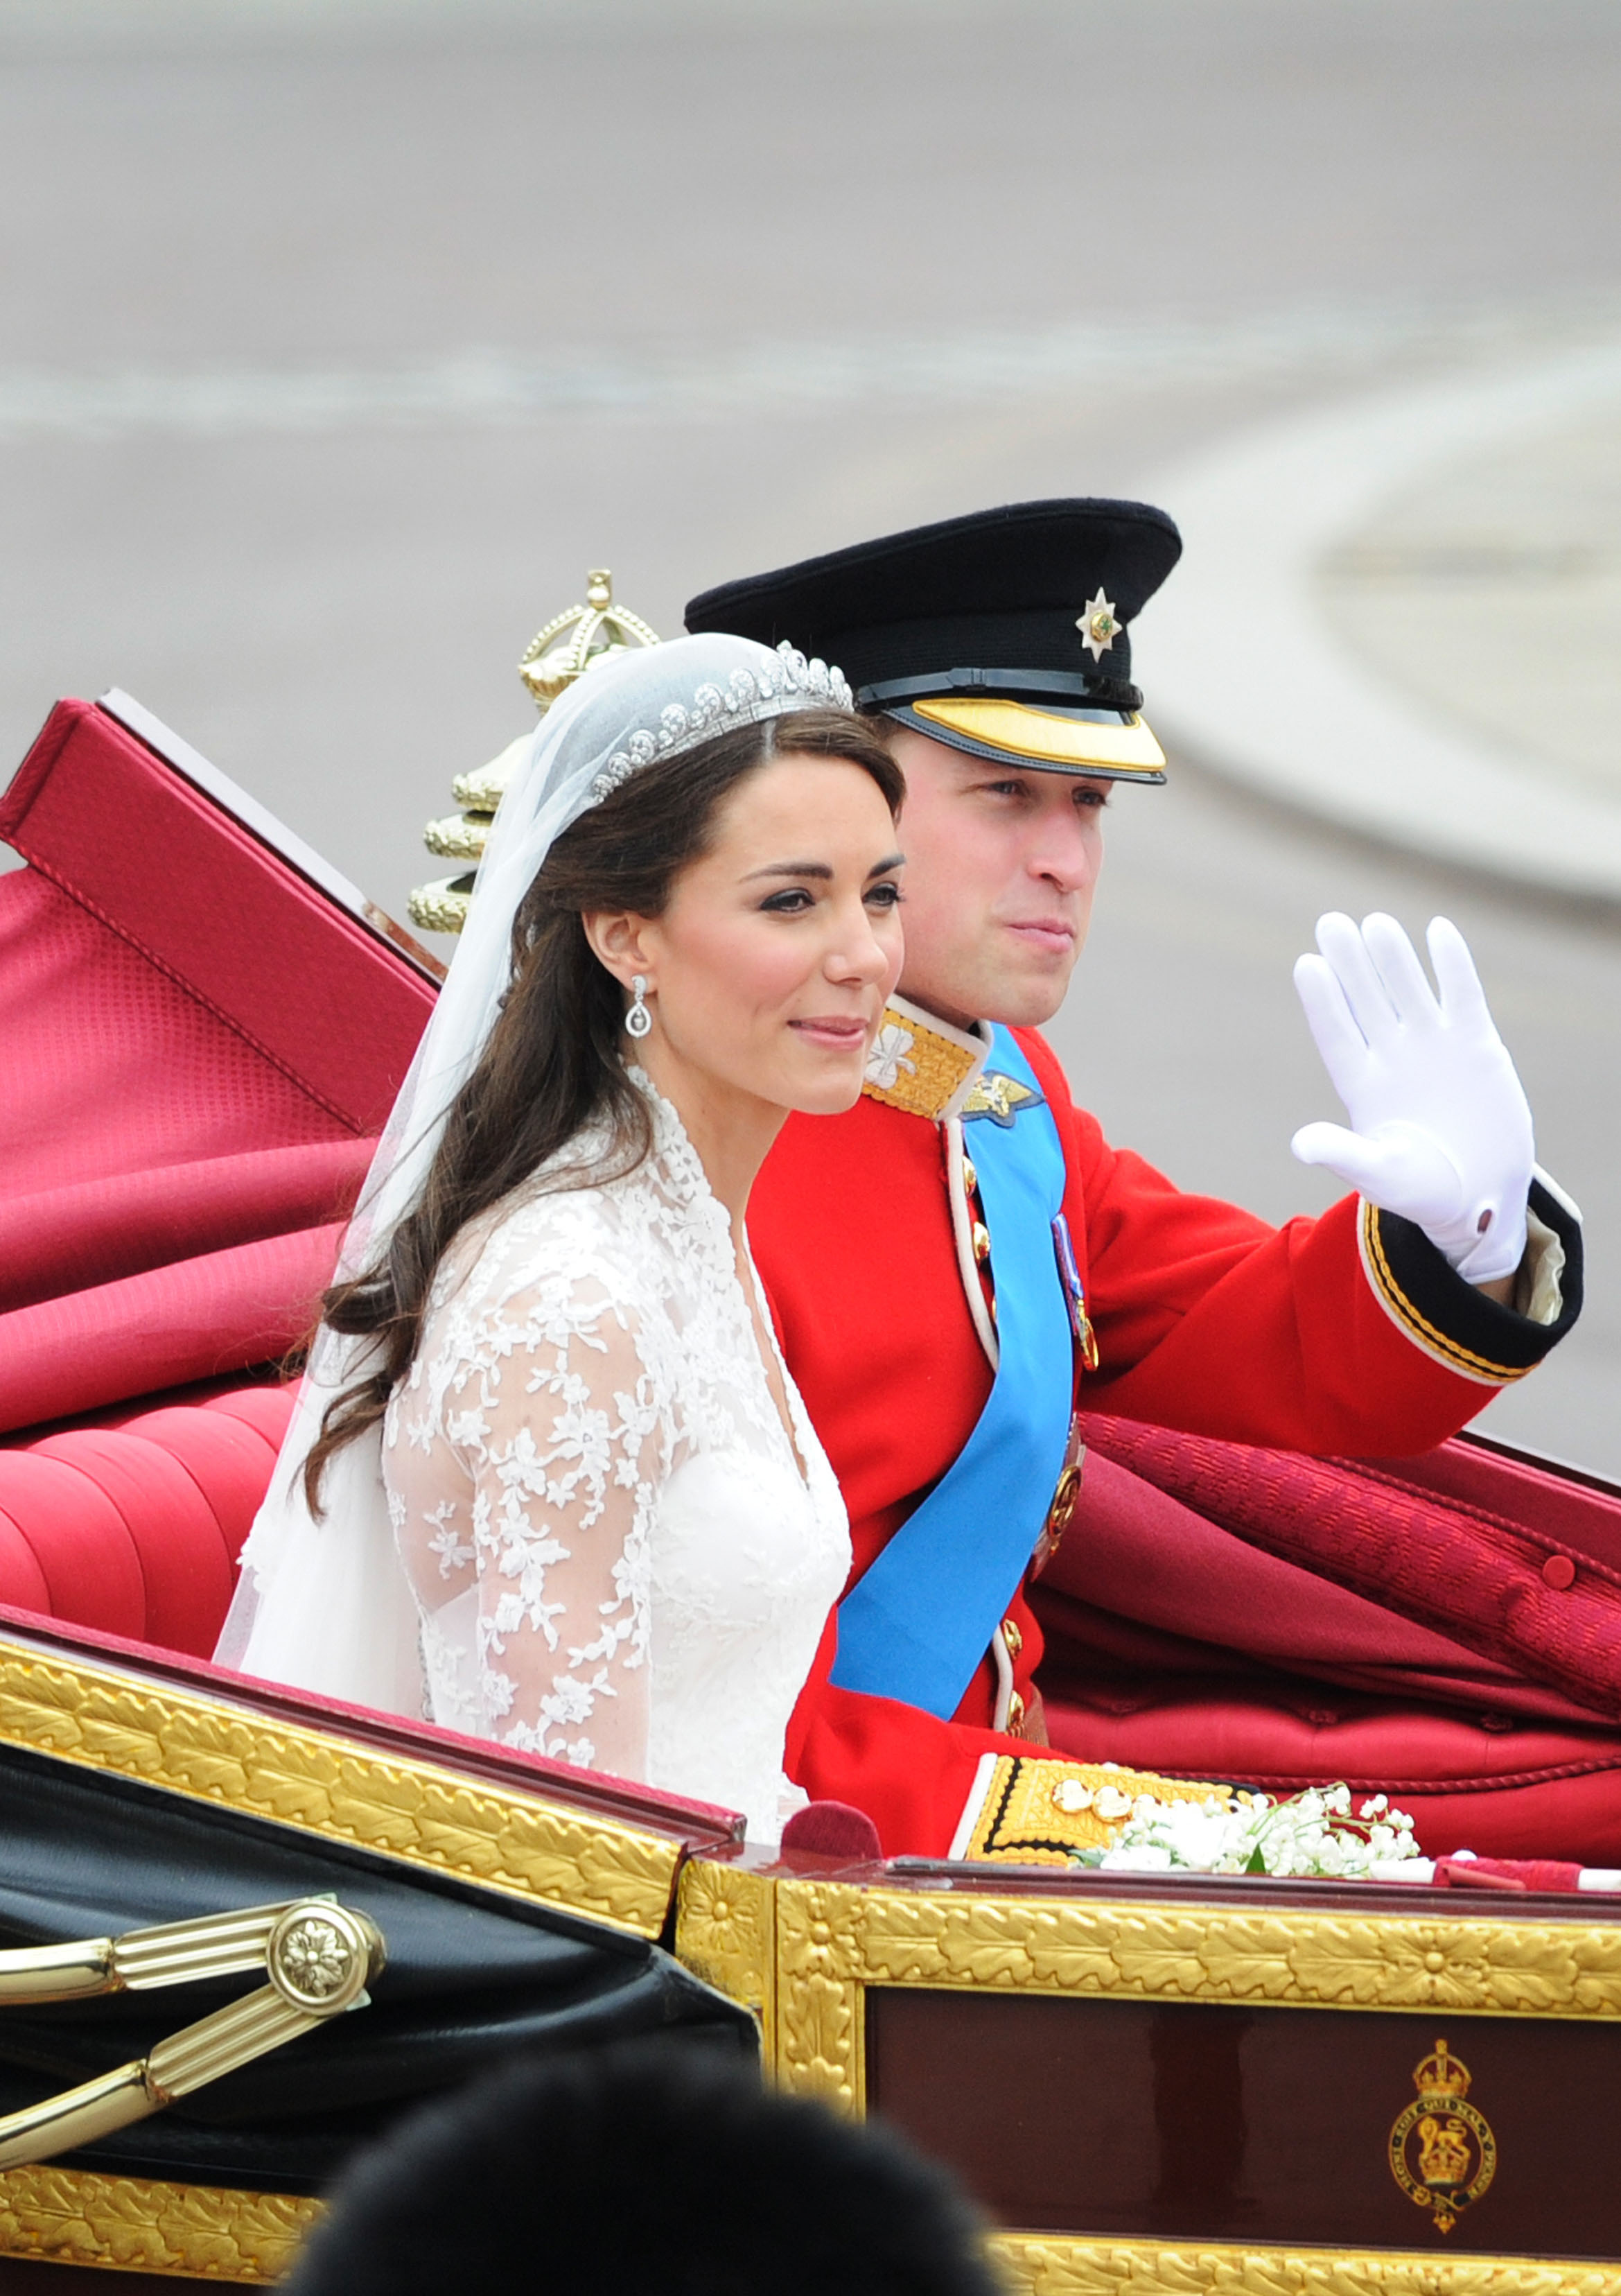 Η πριγκίπισσα Diana και η Kate Middleton φορούσαν αυτό το άρωμα όταν παντρεύτηκαν! H Meghan Markle;